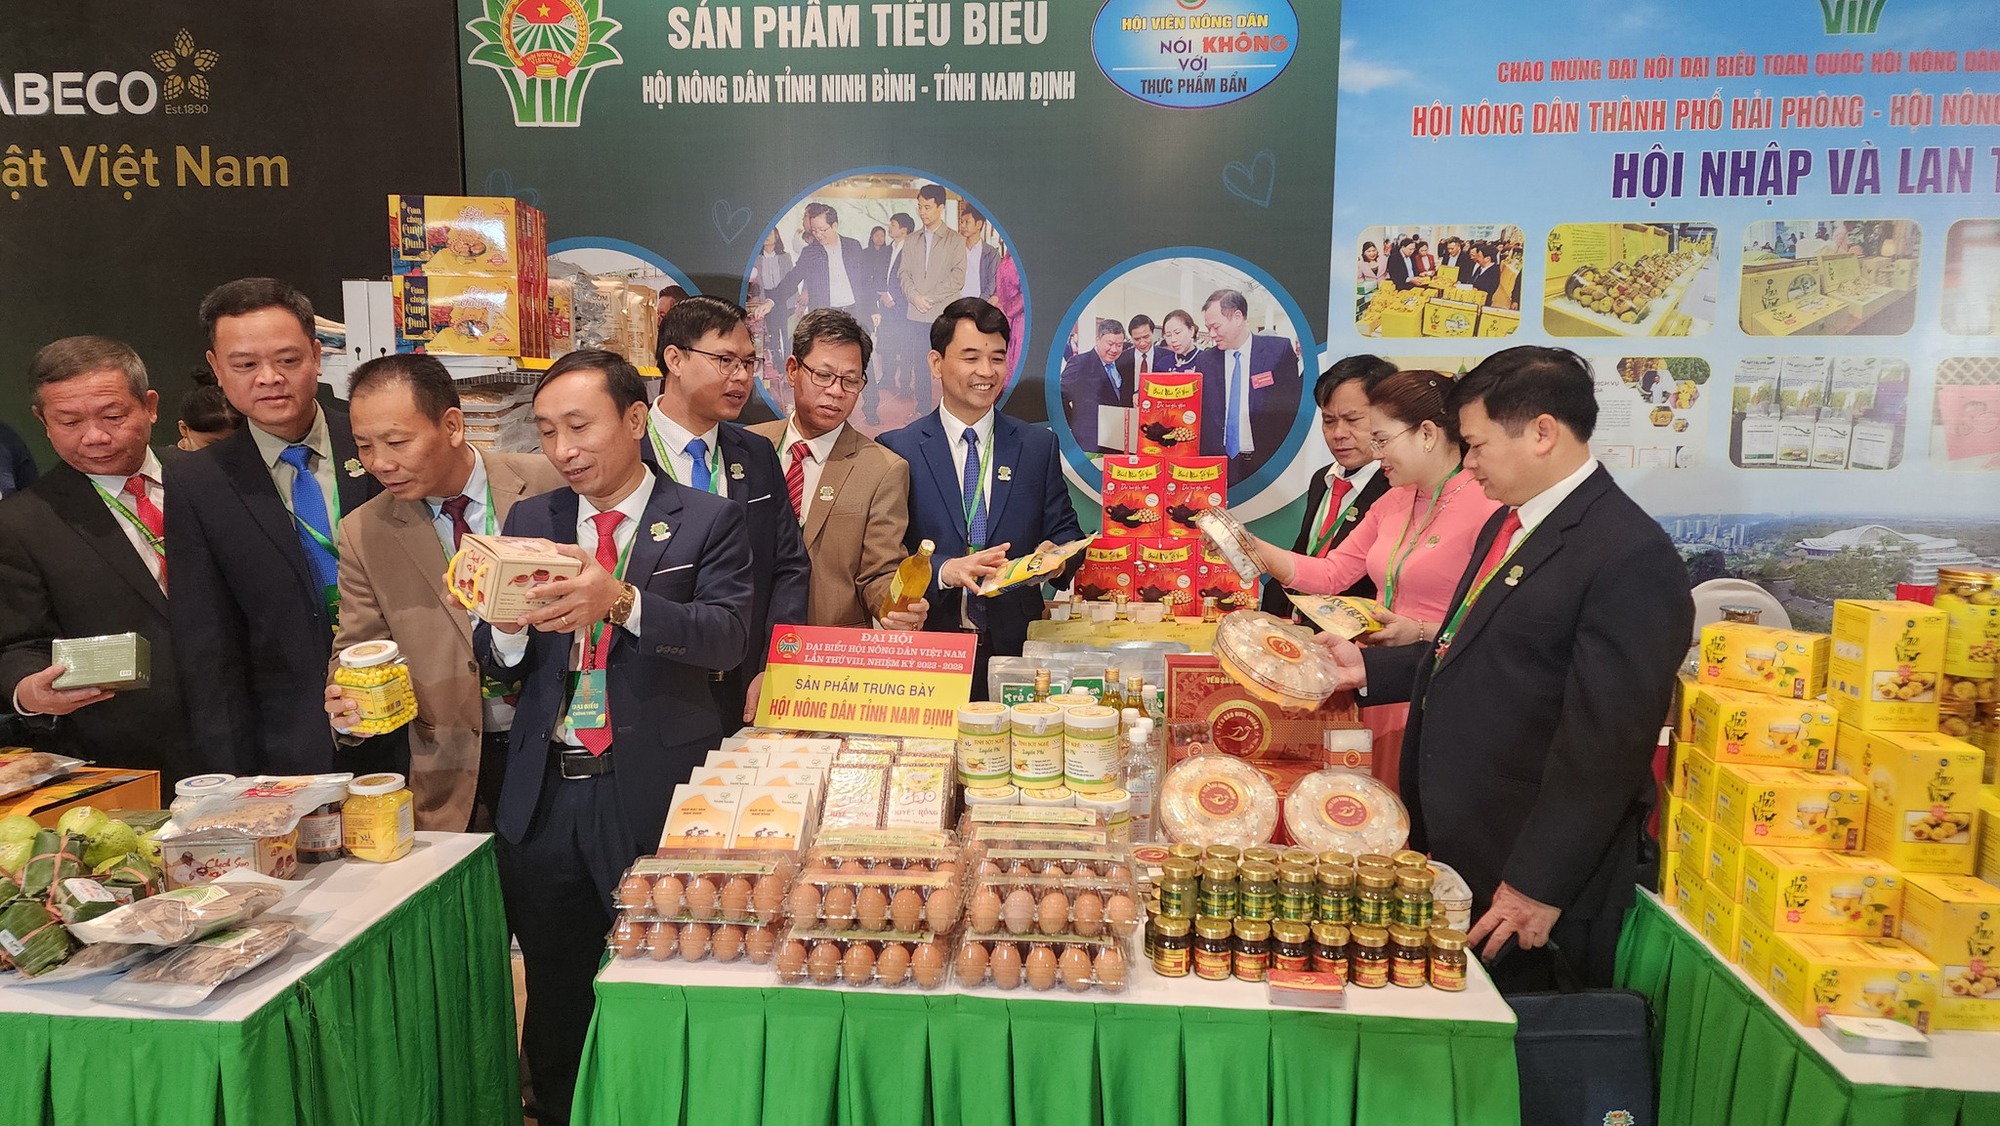 Nữ Chủ tịch Hội ND phường ở Bắc Ninh phấn khởi khi Thủ tướng đề nghị ngân hàng linh hoạt cho nông dân vay vốn- Ảnh 4.